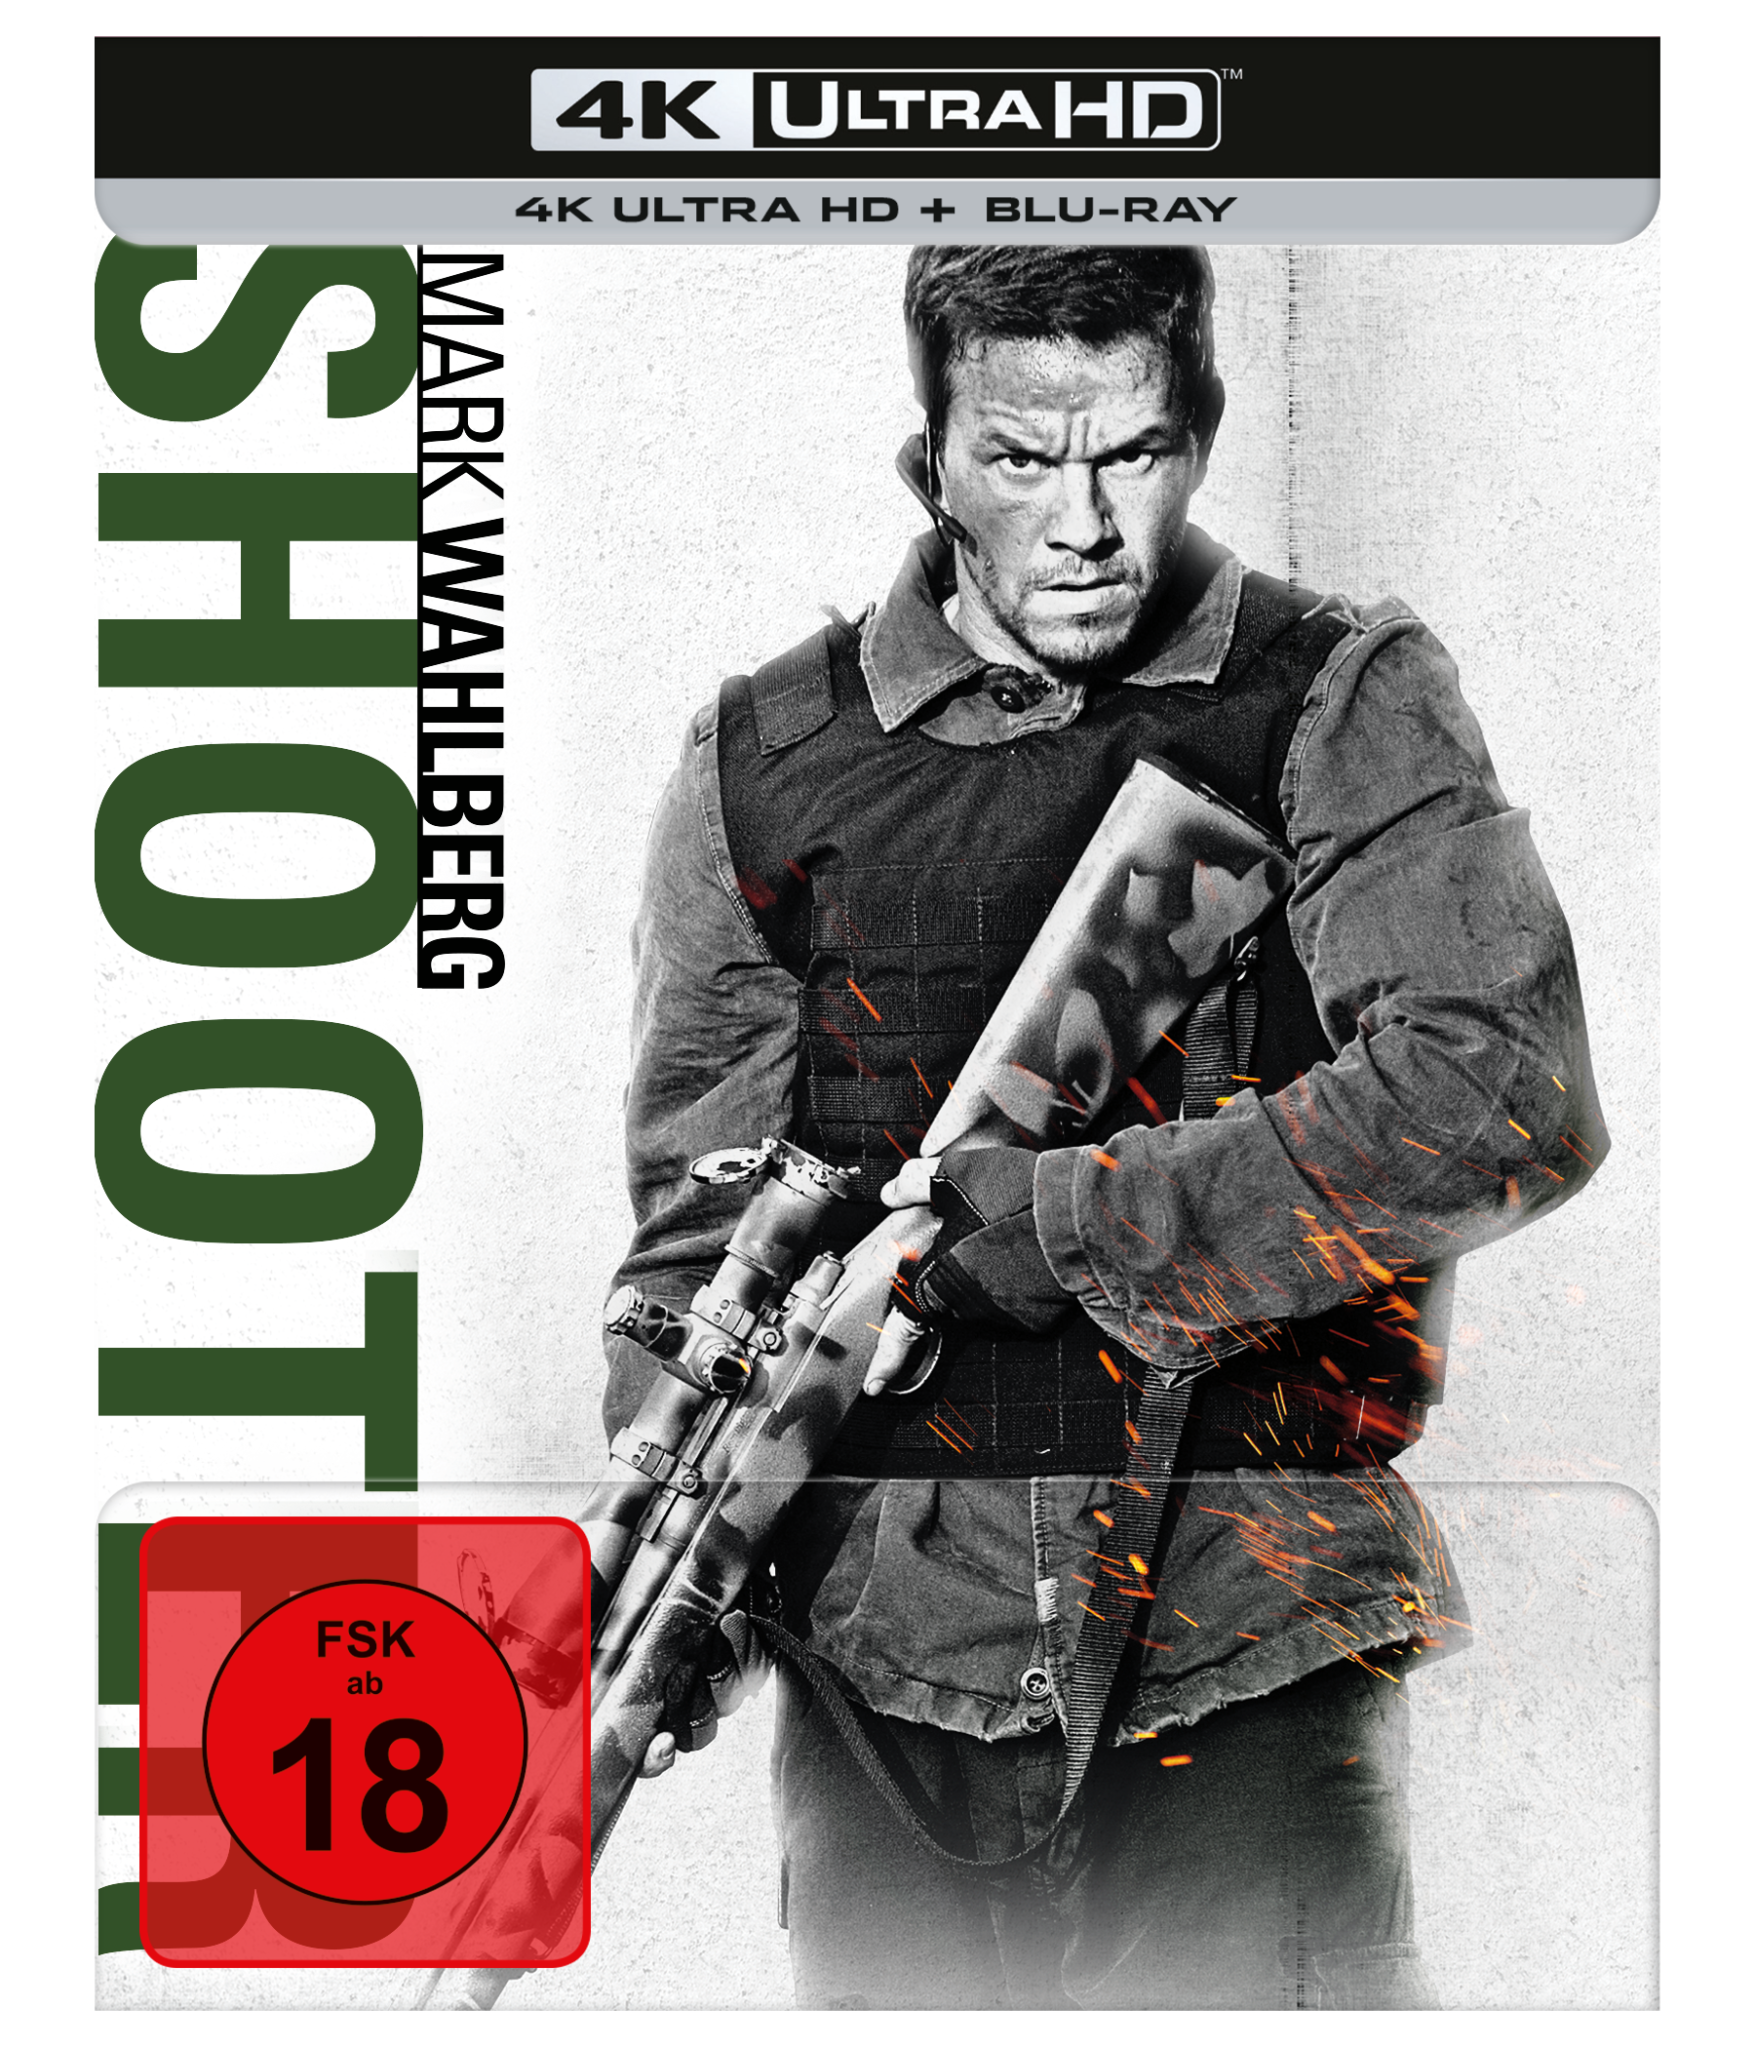 Bild der 4K UHD des Films Shooter mit Mark Wahlberg, der ein Sniper-Gewehr in der Hand hat.